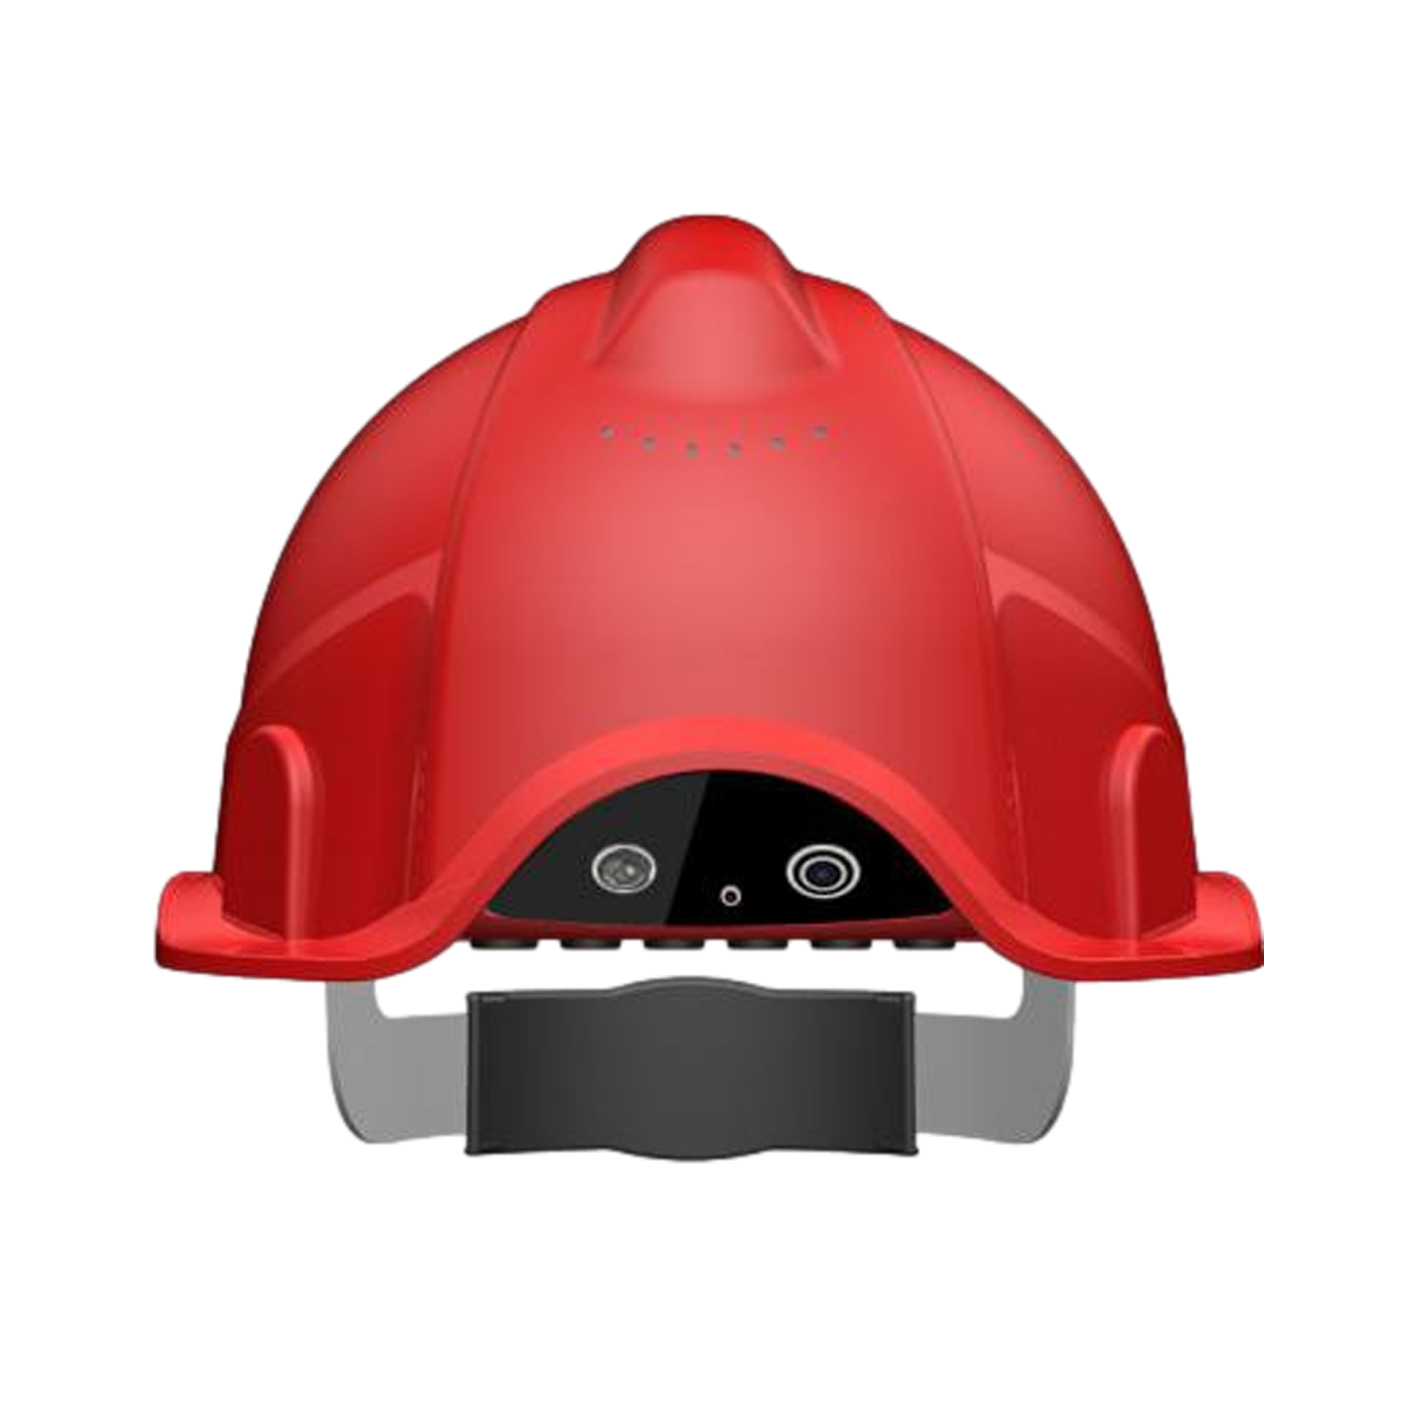 智能安全帽 高空作业安全帽智能高空防坠安全帽 工人空间定位安全帽 智能分析 语音提醒 移动巡检 智能安全帽 高空作业安全帽